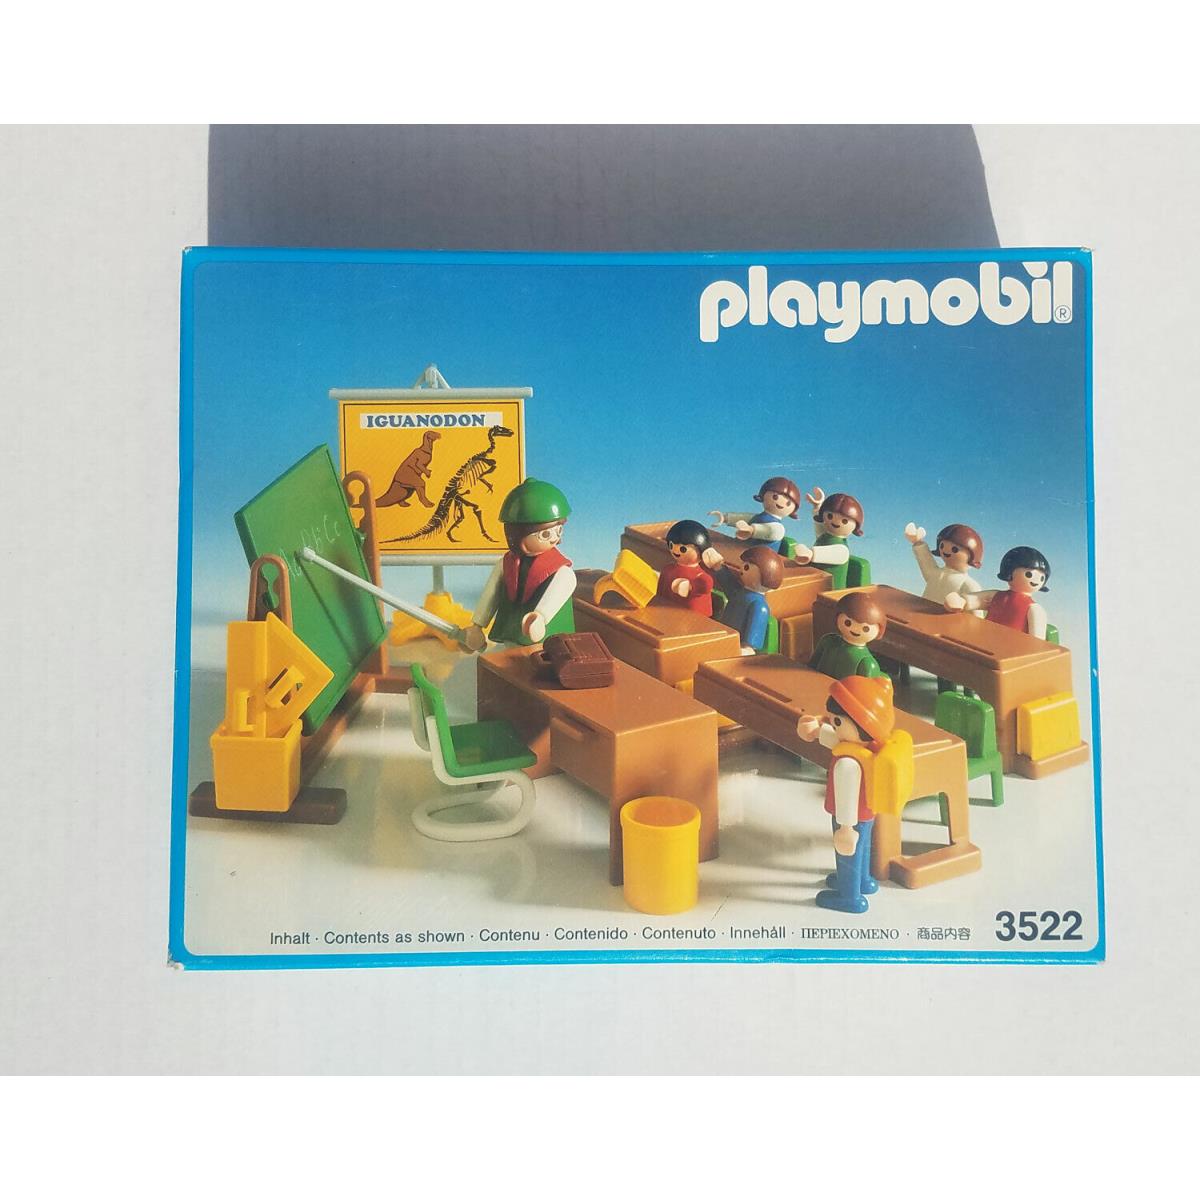 Playmobil 3522 Classroom 1992 Rare Collectors Item